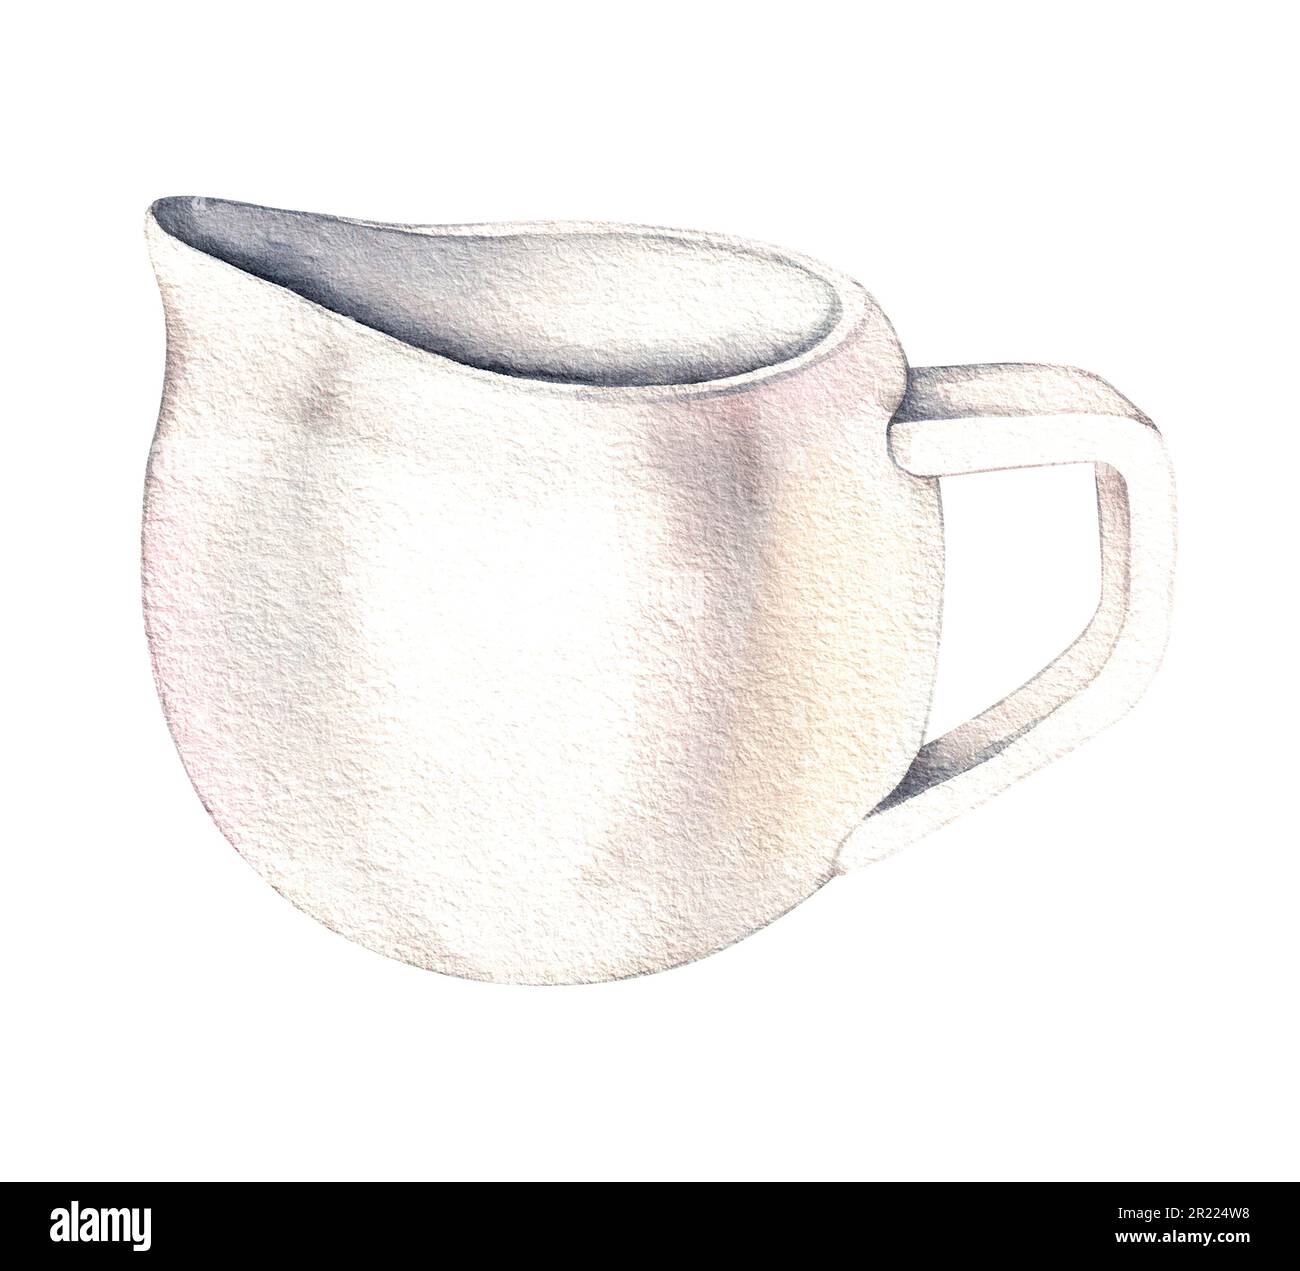 a white ceramic milk pot on a white background Stock Photo - Alamy